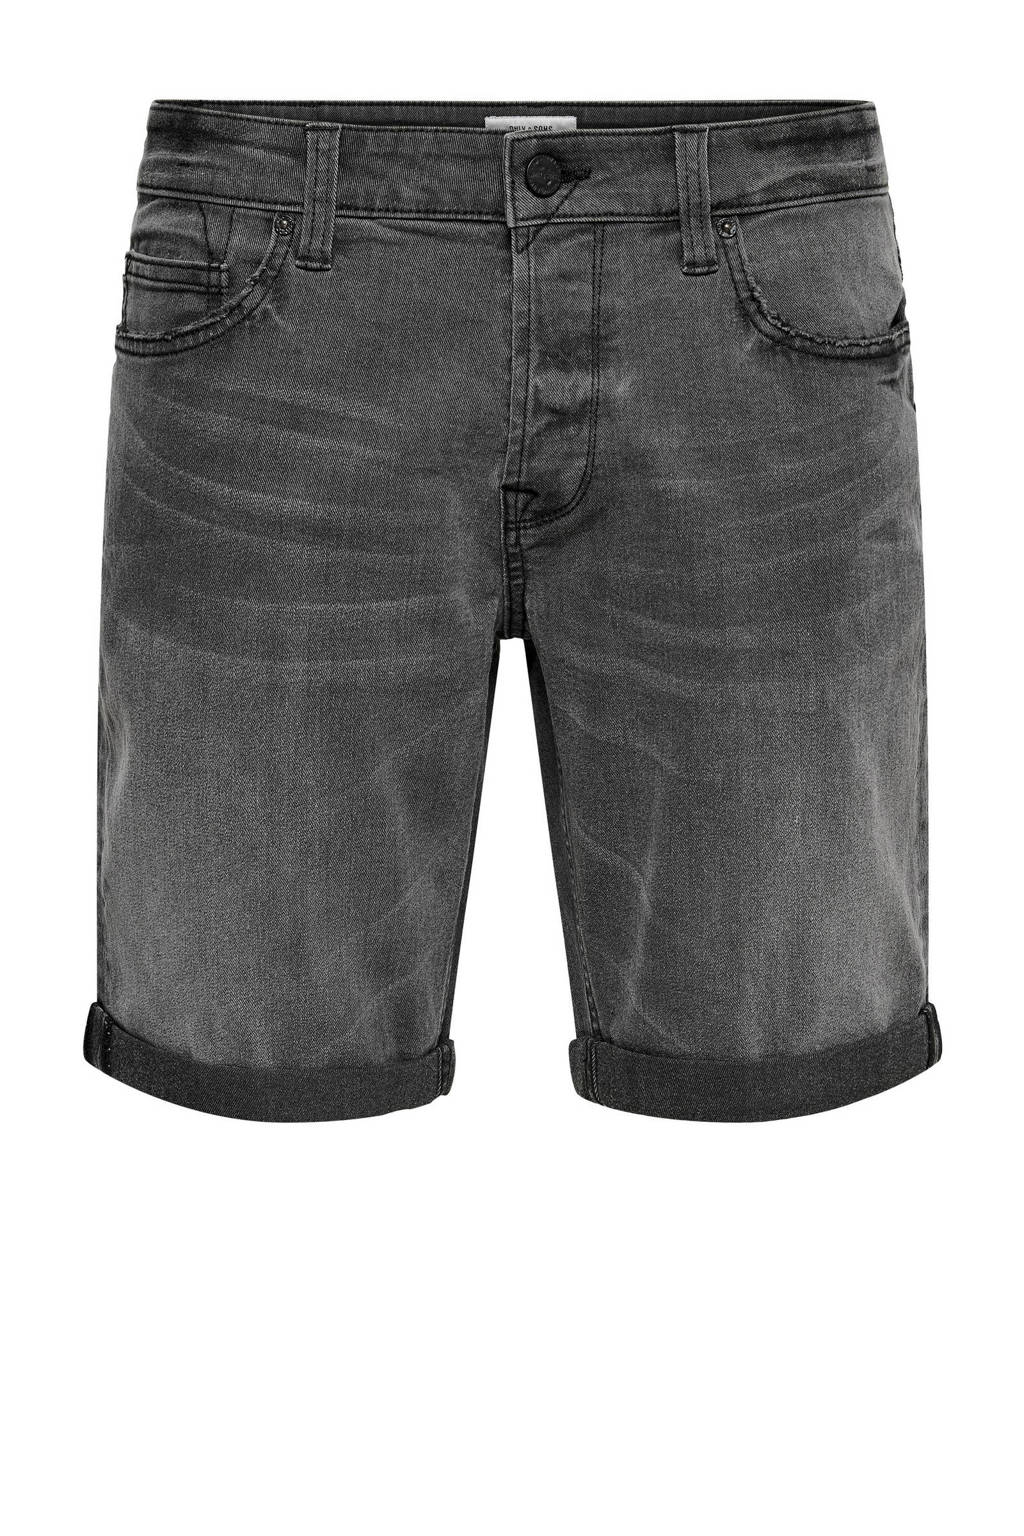 ONLY & SONS regular fit jeans short ONSPLY black denim 7481, Black denim 7481